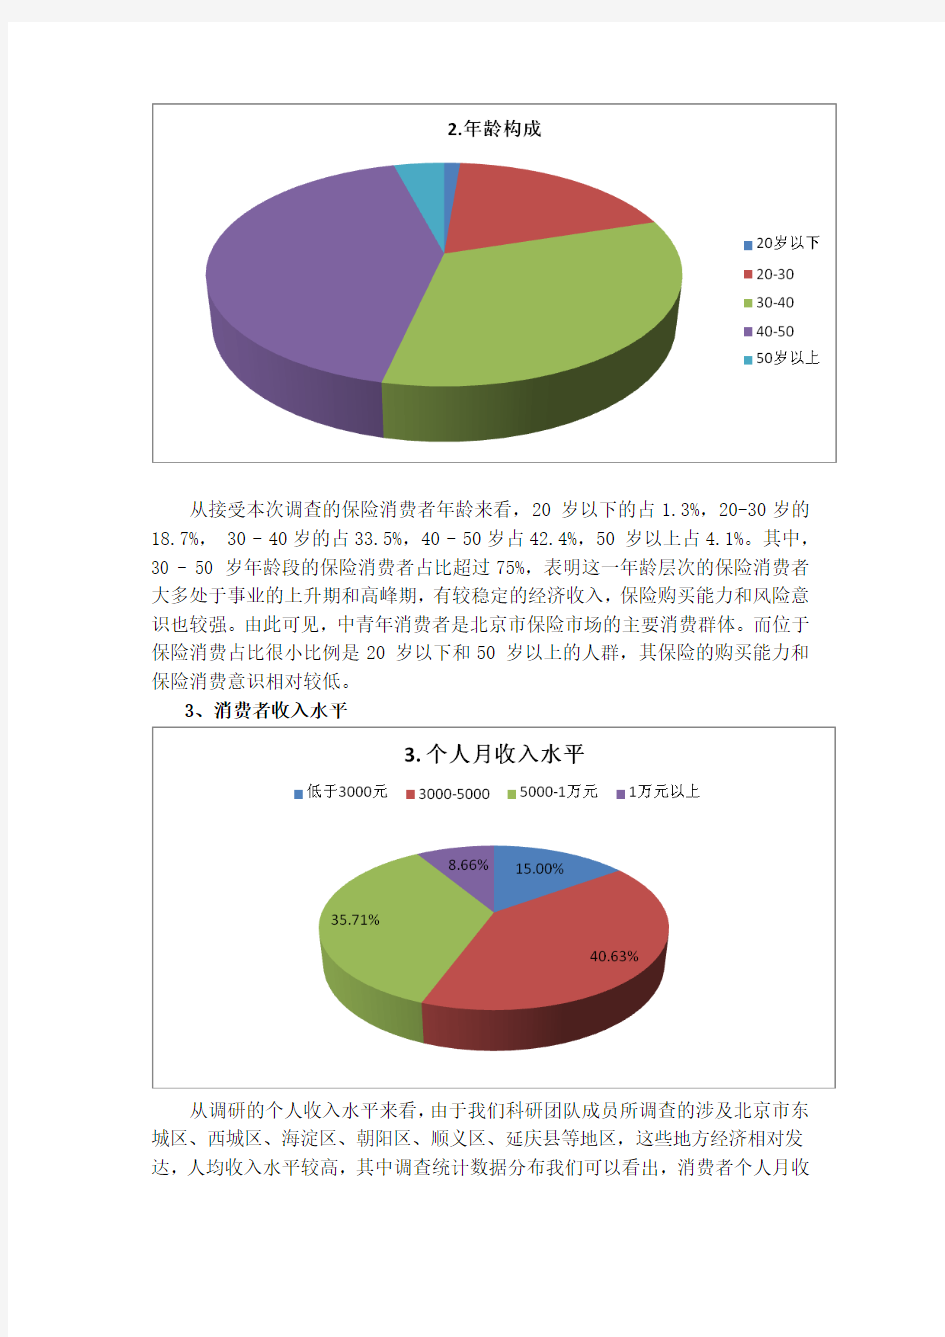 关于保险消费者知识的调研报告以北京市为例